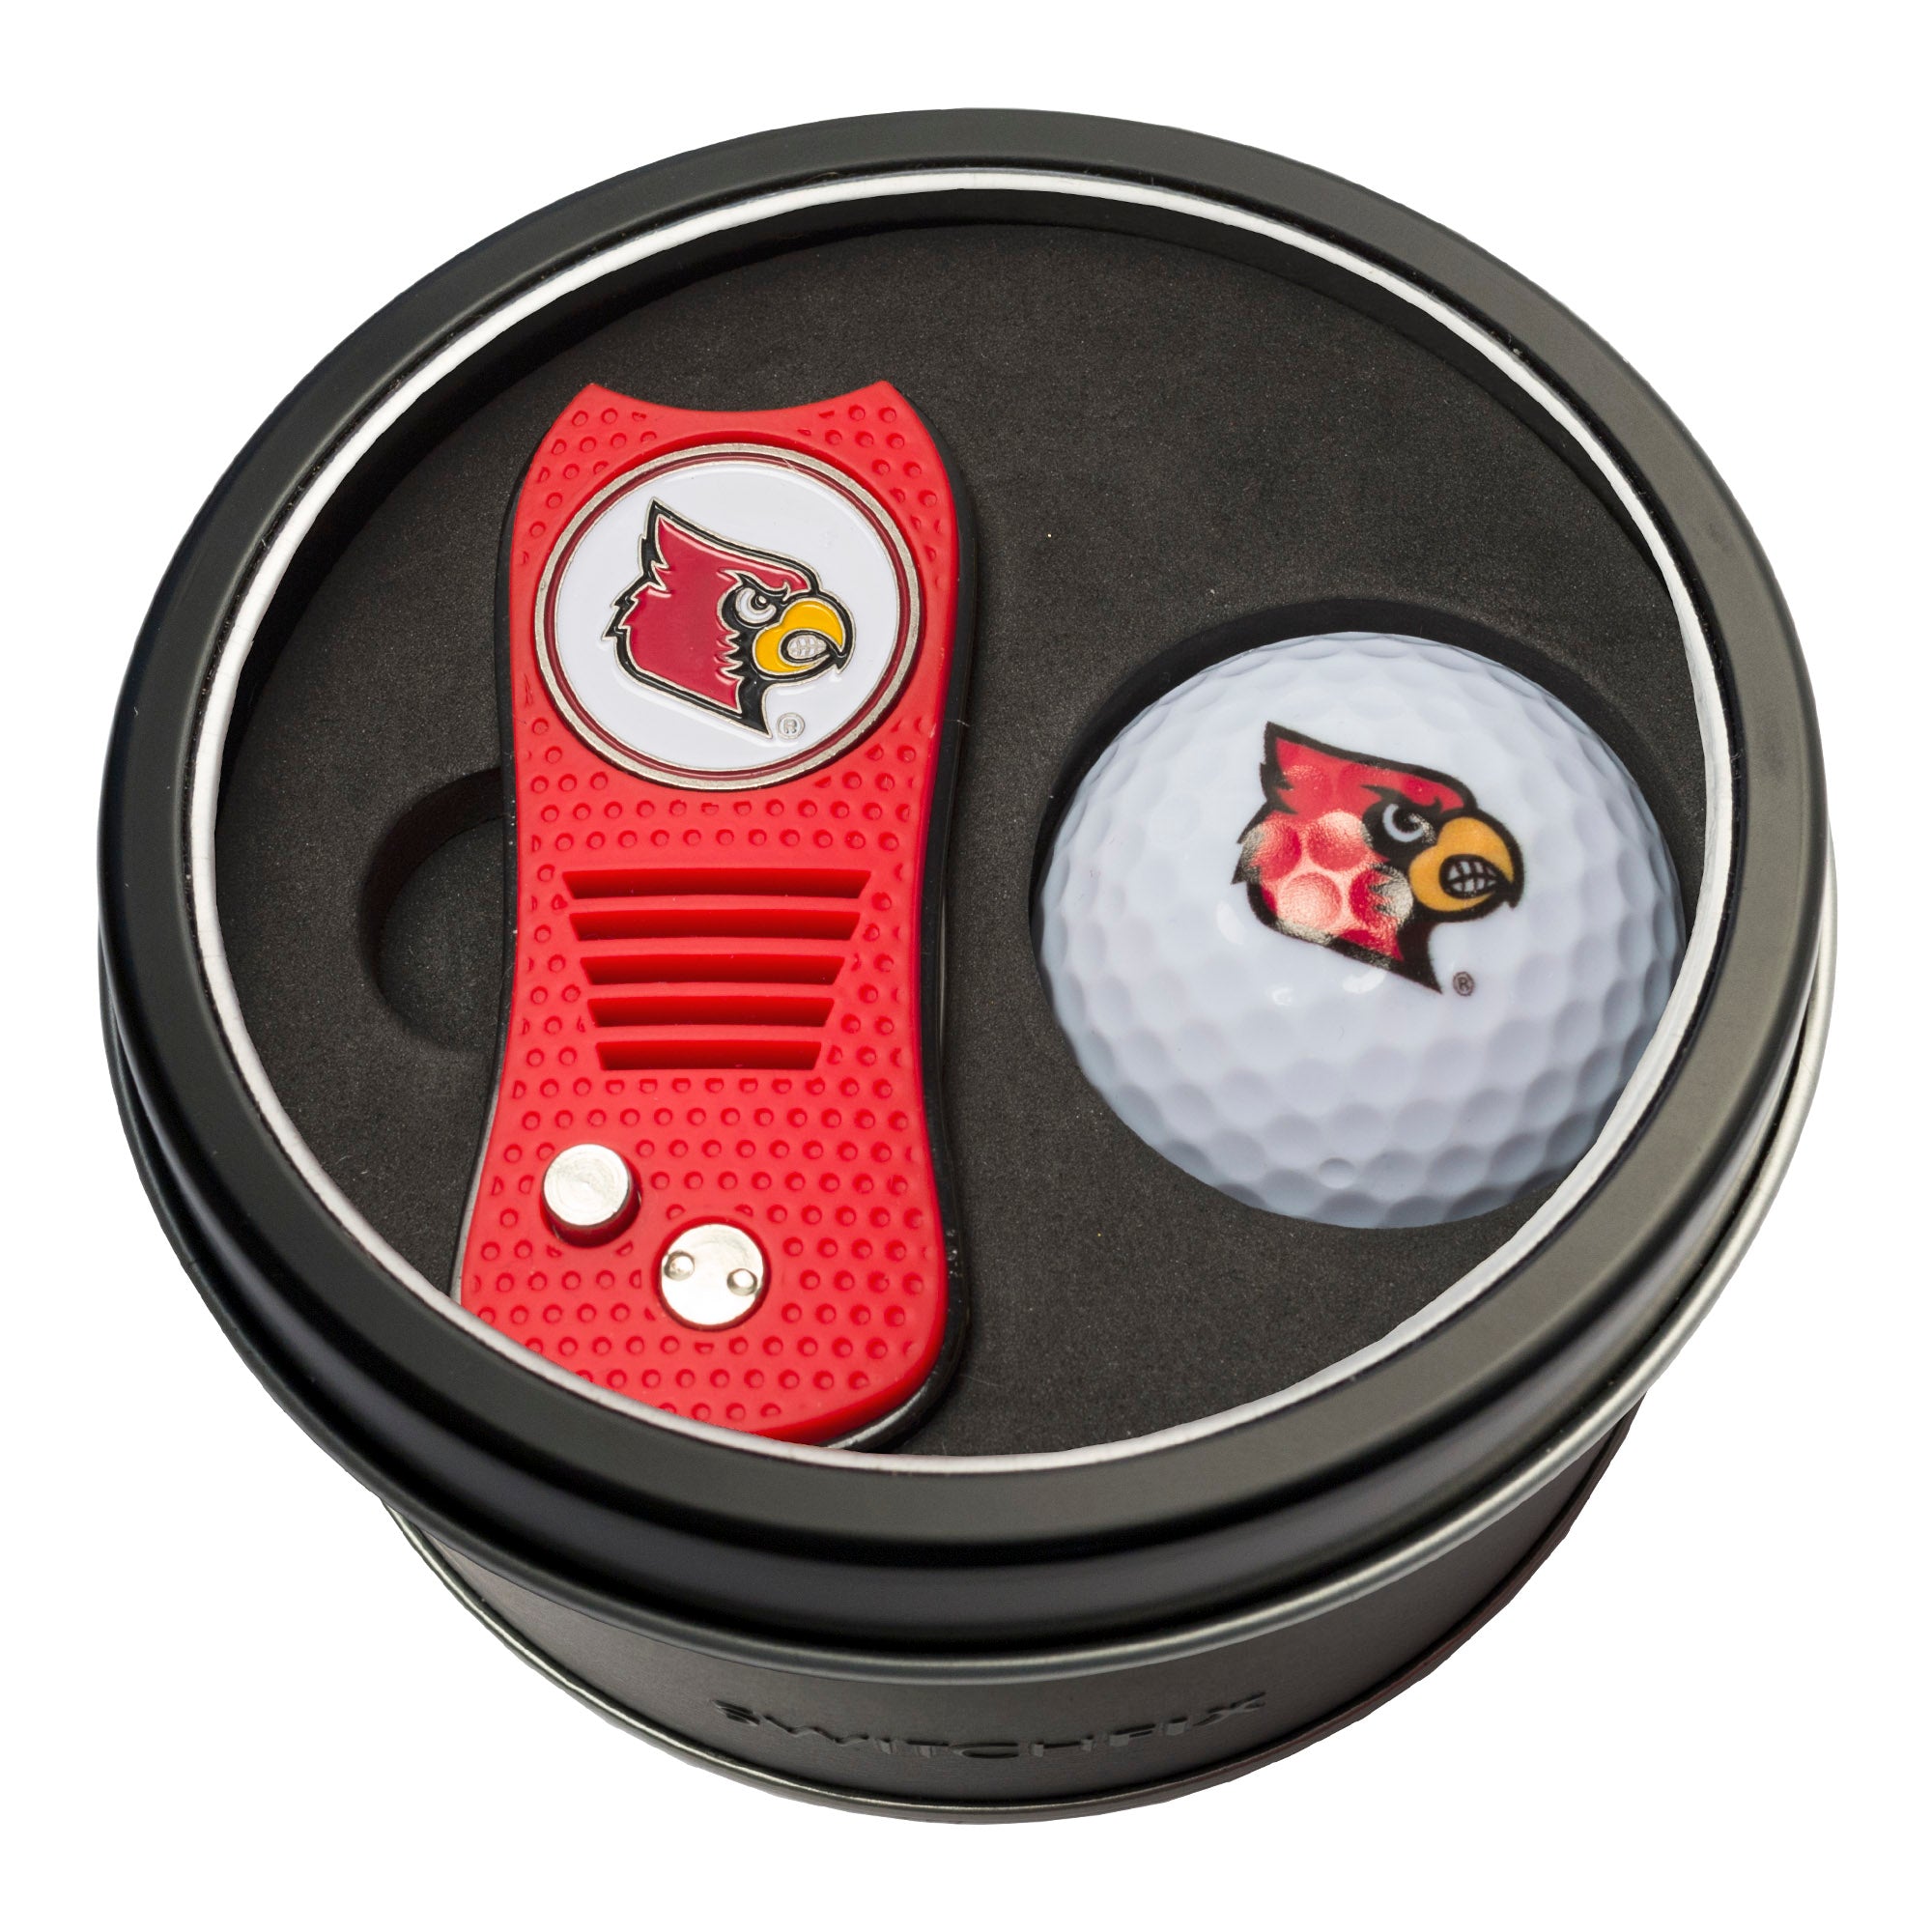 Louisville Cardinals Switchblade Divot Tool + Golf Ball Tin Gift Set